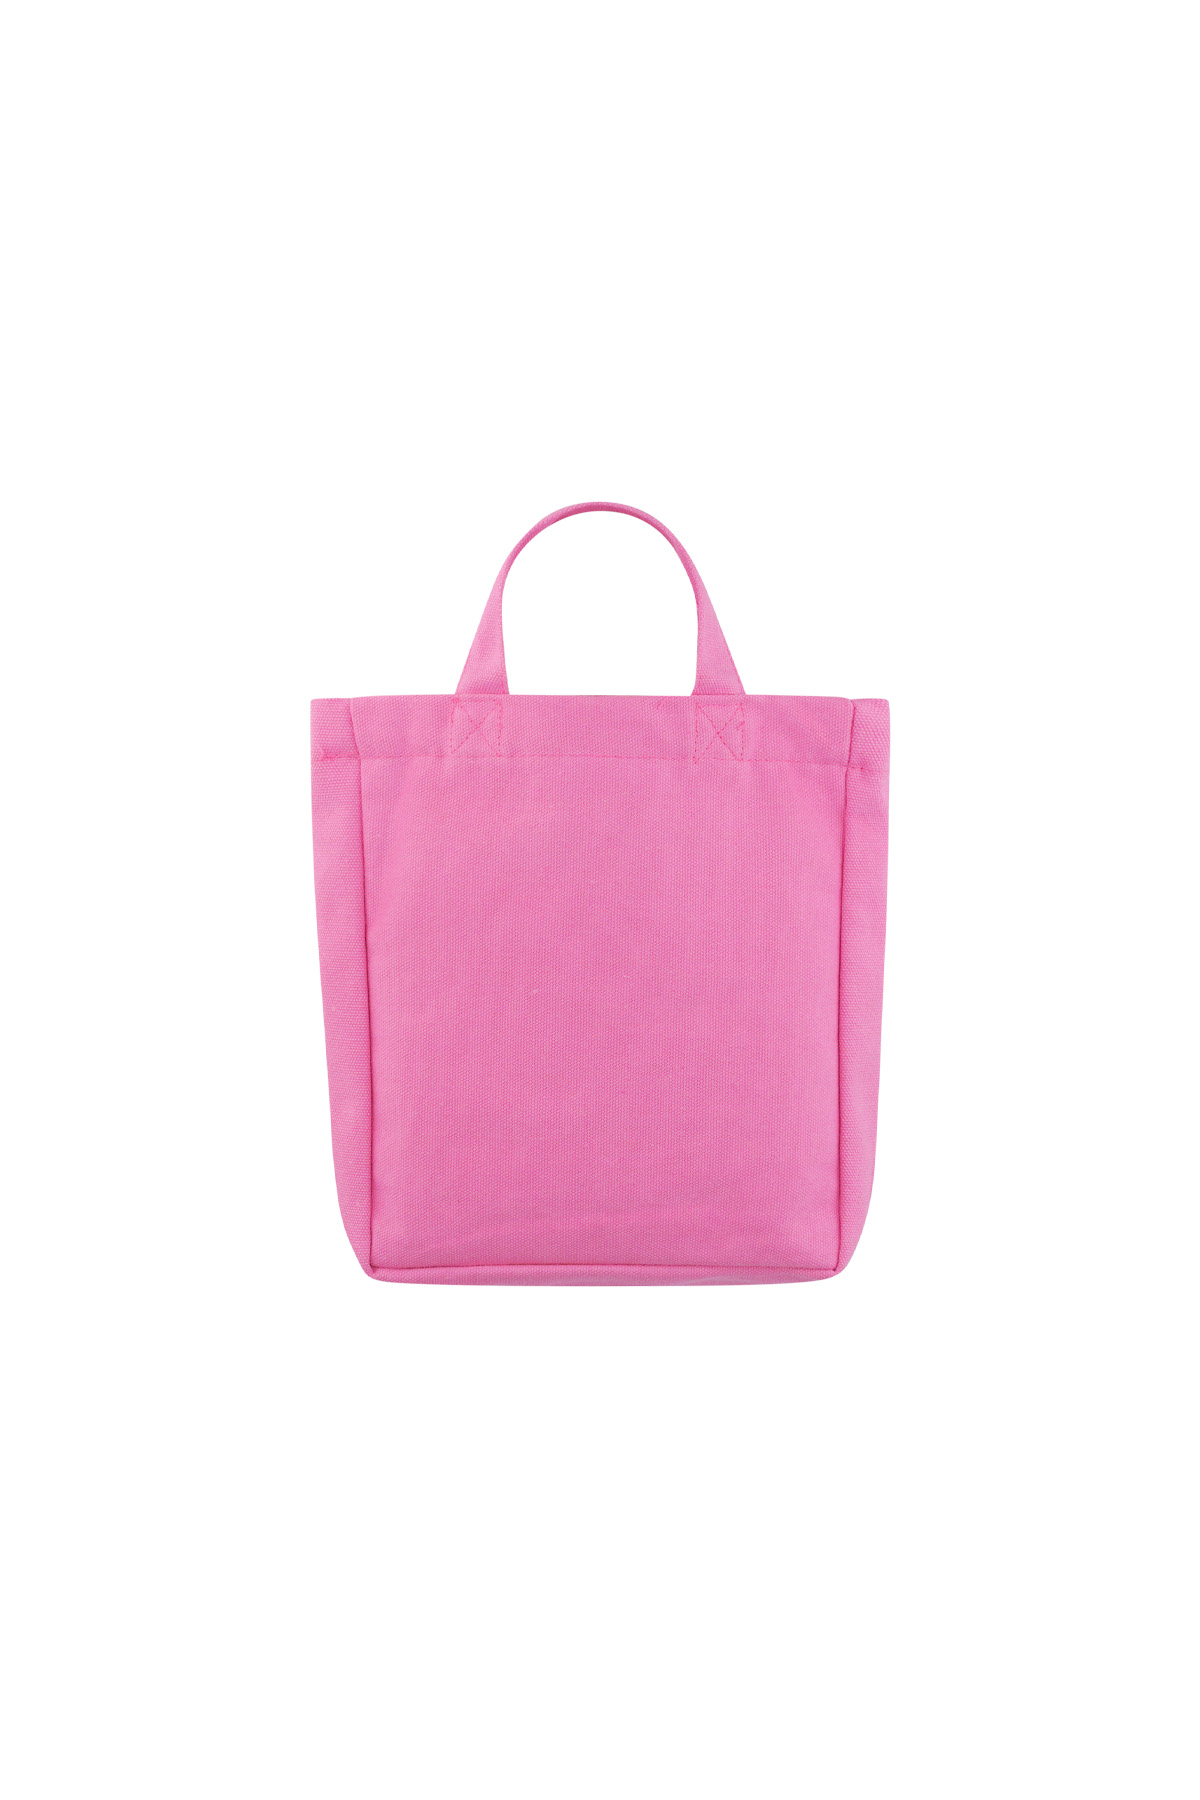 Bolsa pequeña de lona para pestañas - rosa h5 Imagen4